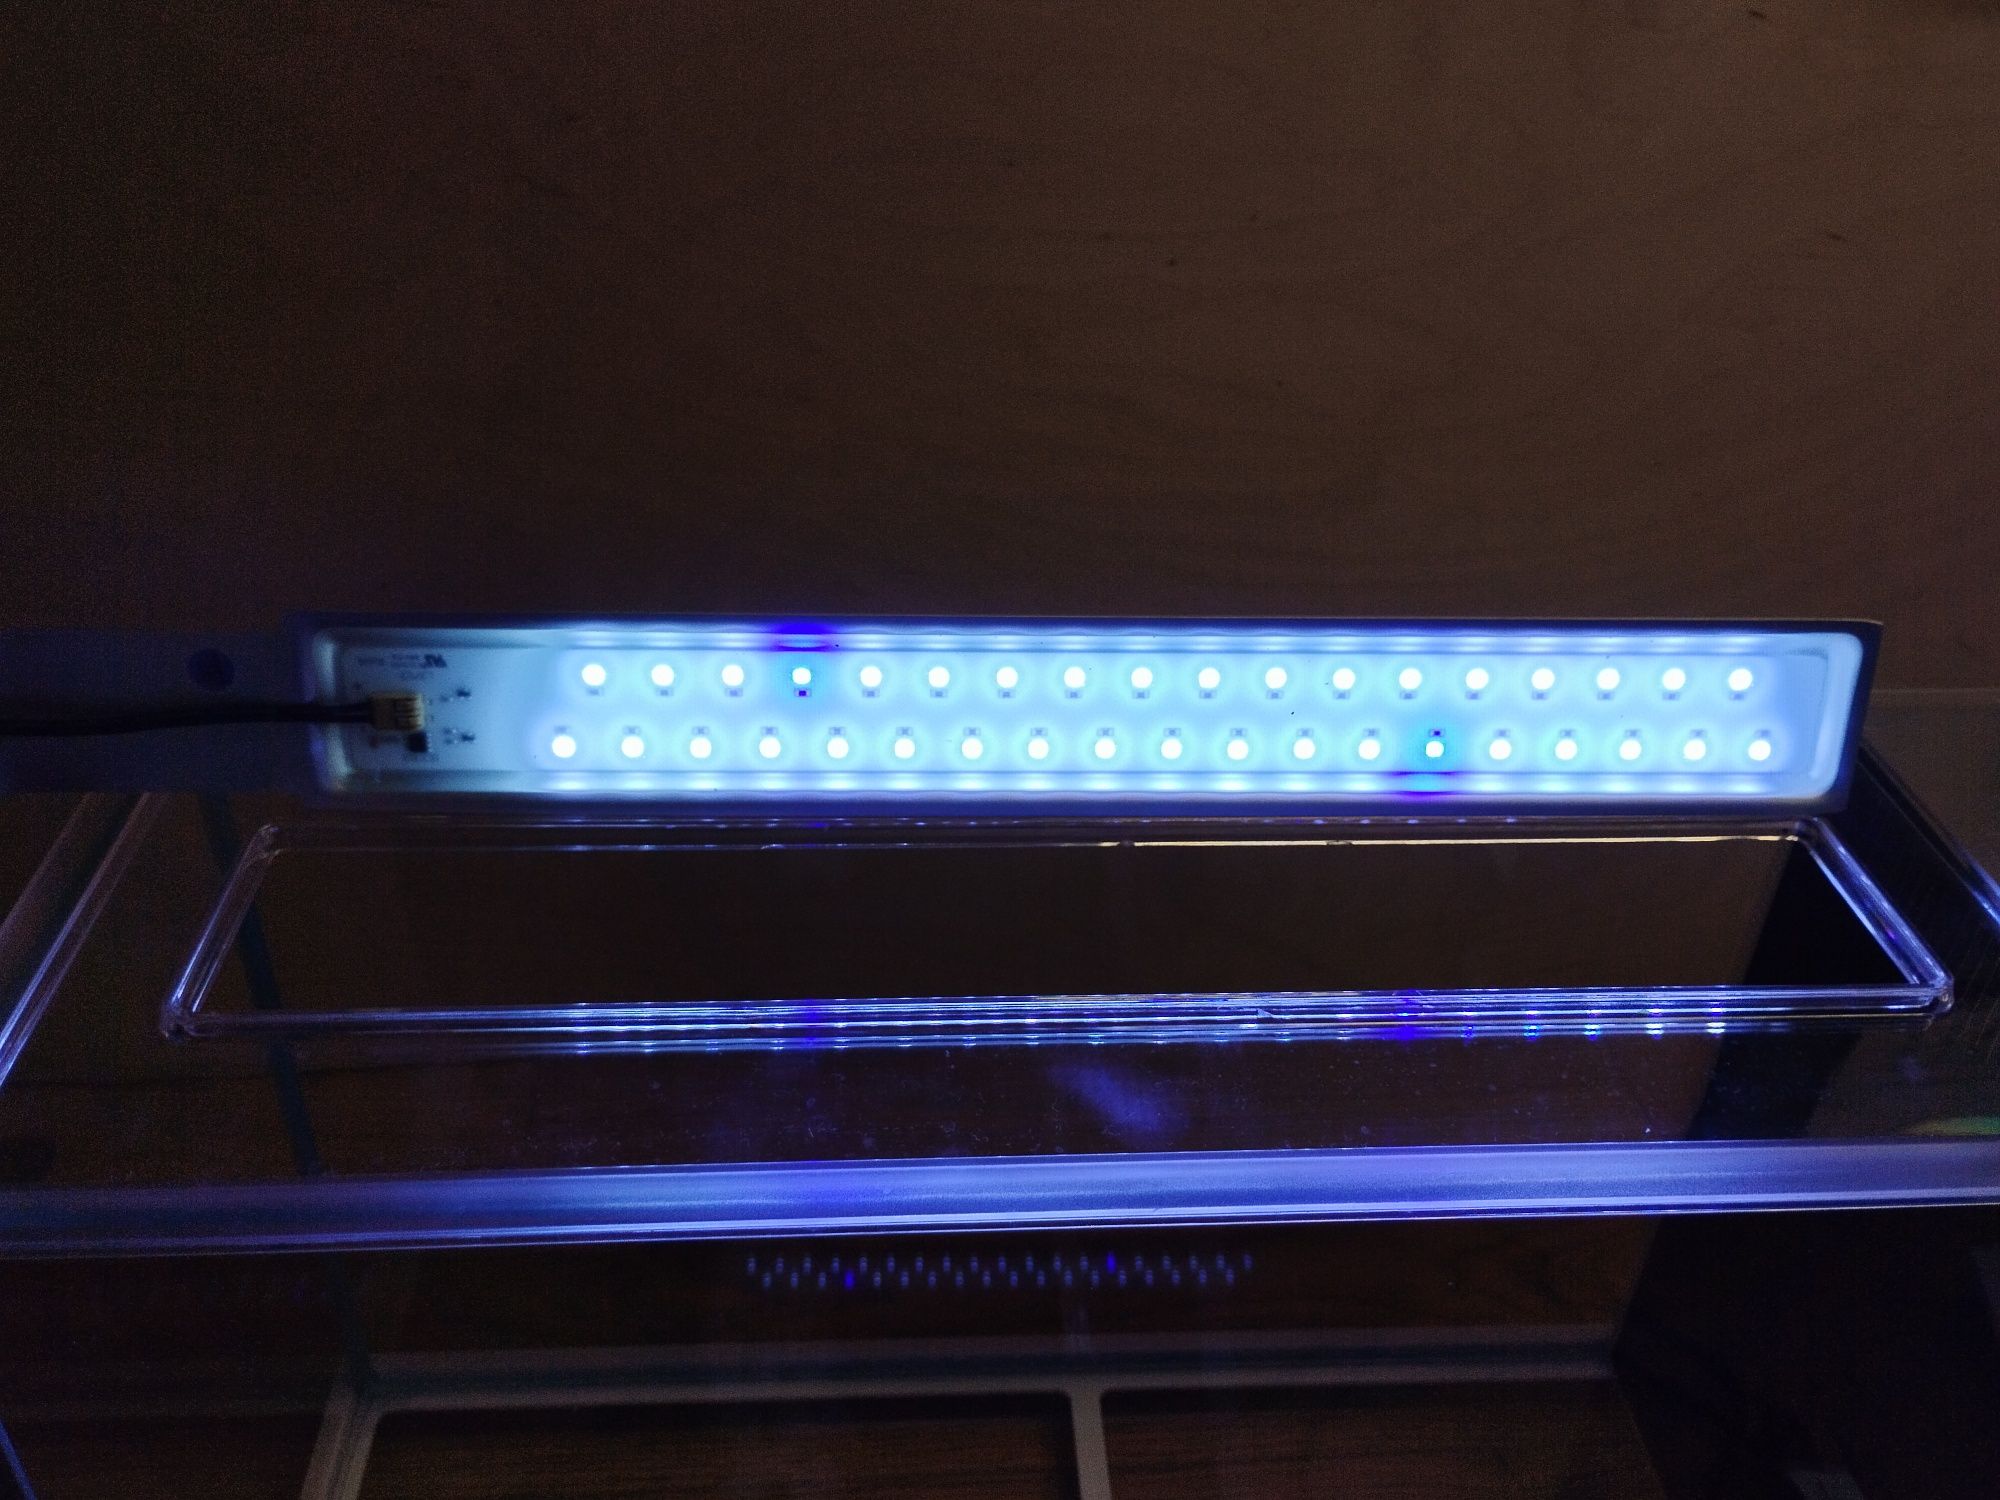 Akwarium szklane FLUVAL SPEC V Z LED, 19L, 52 CM X 29.5 CM X 19 CM, BI